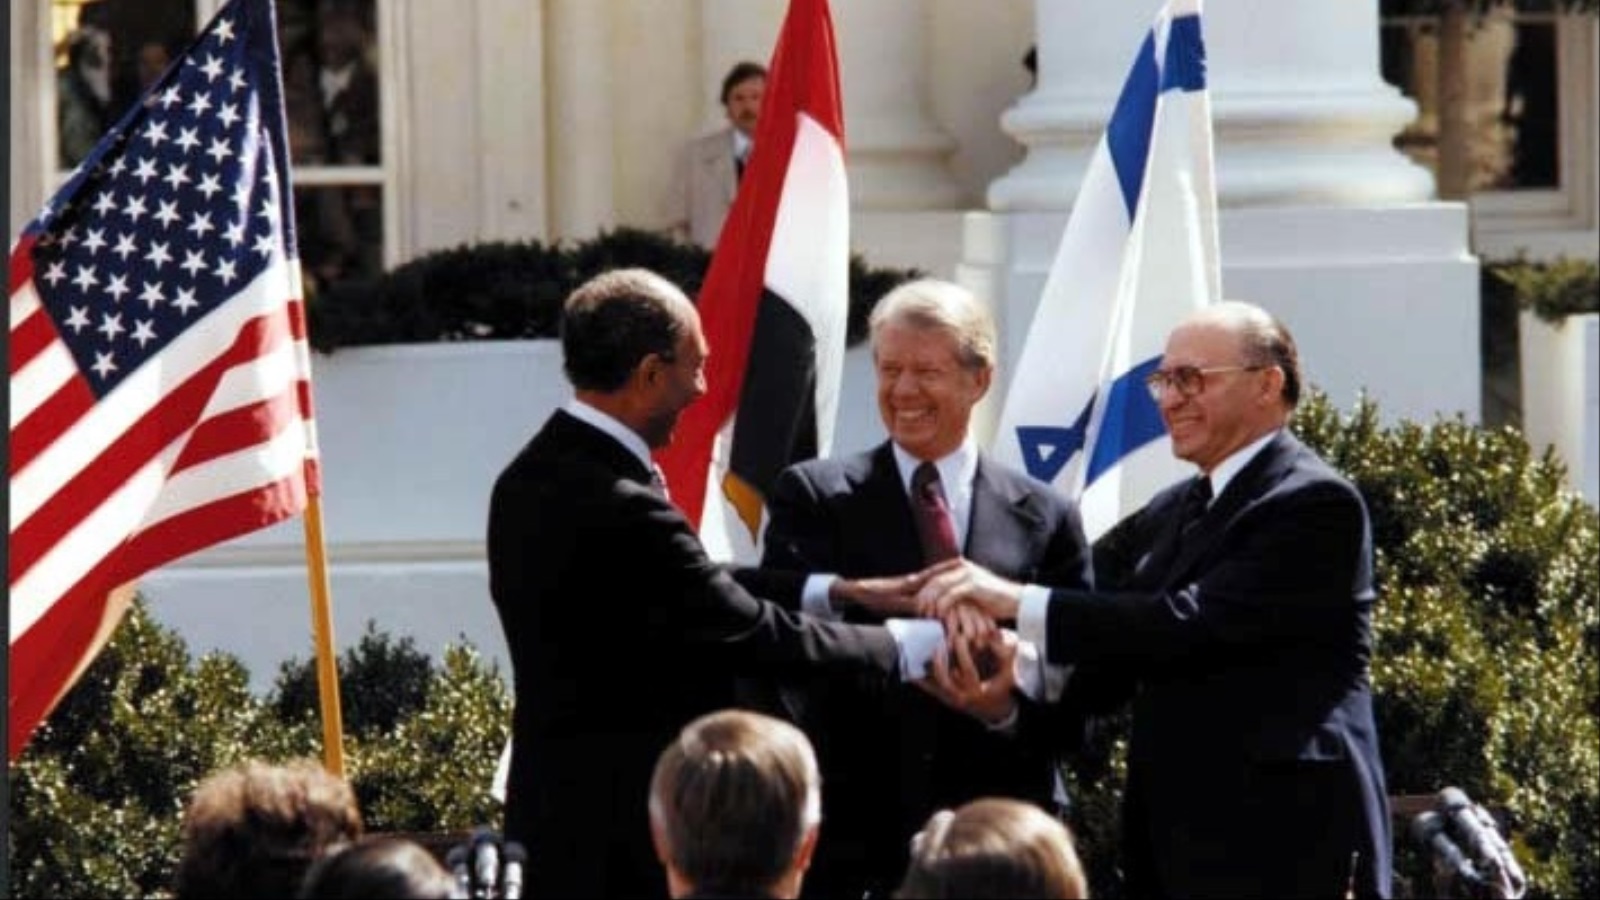 بعد توقيع مصر اتفاقية سلام مع إسرائيل في نهاية سبعينيات القرن العشرين تعهدت أميركا بتقديم معونة اقتصادية للقاهرة (رويترز)